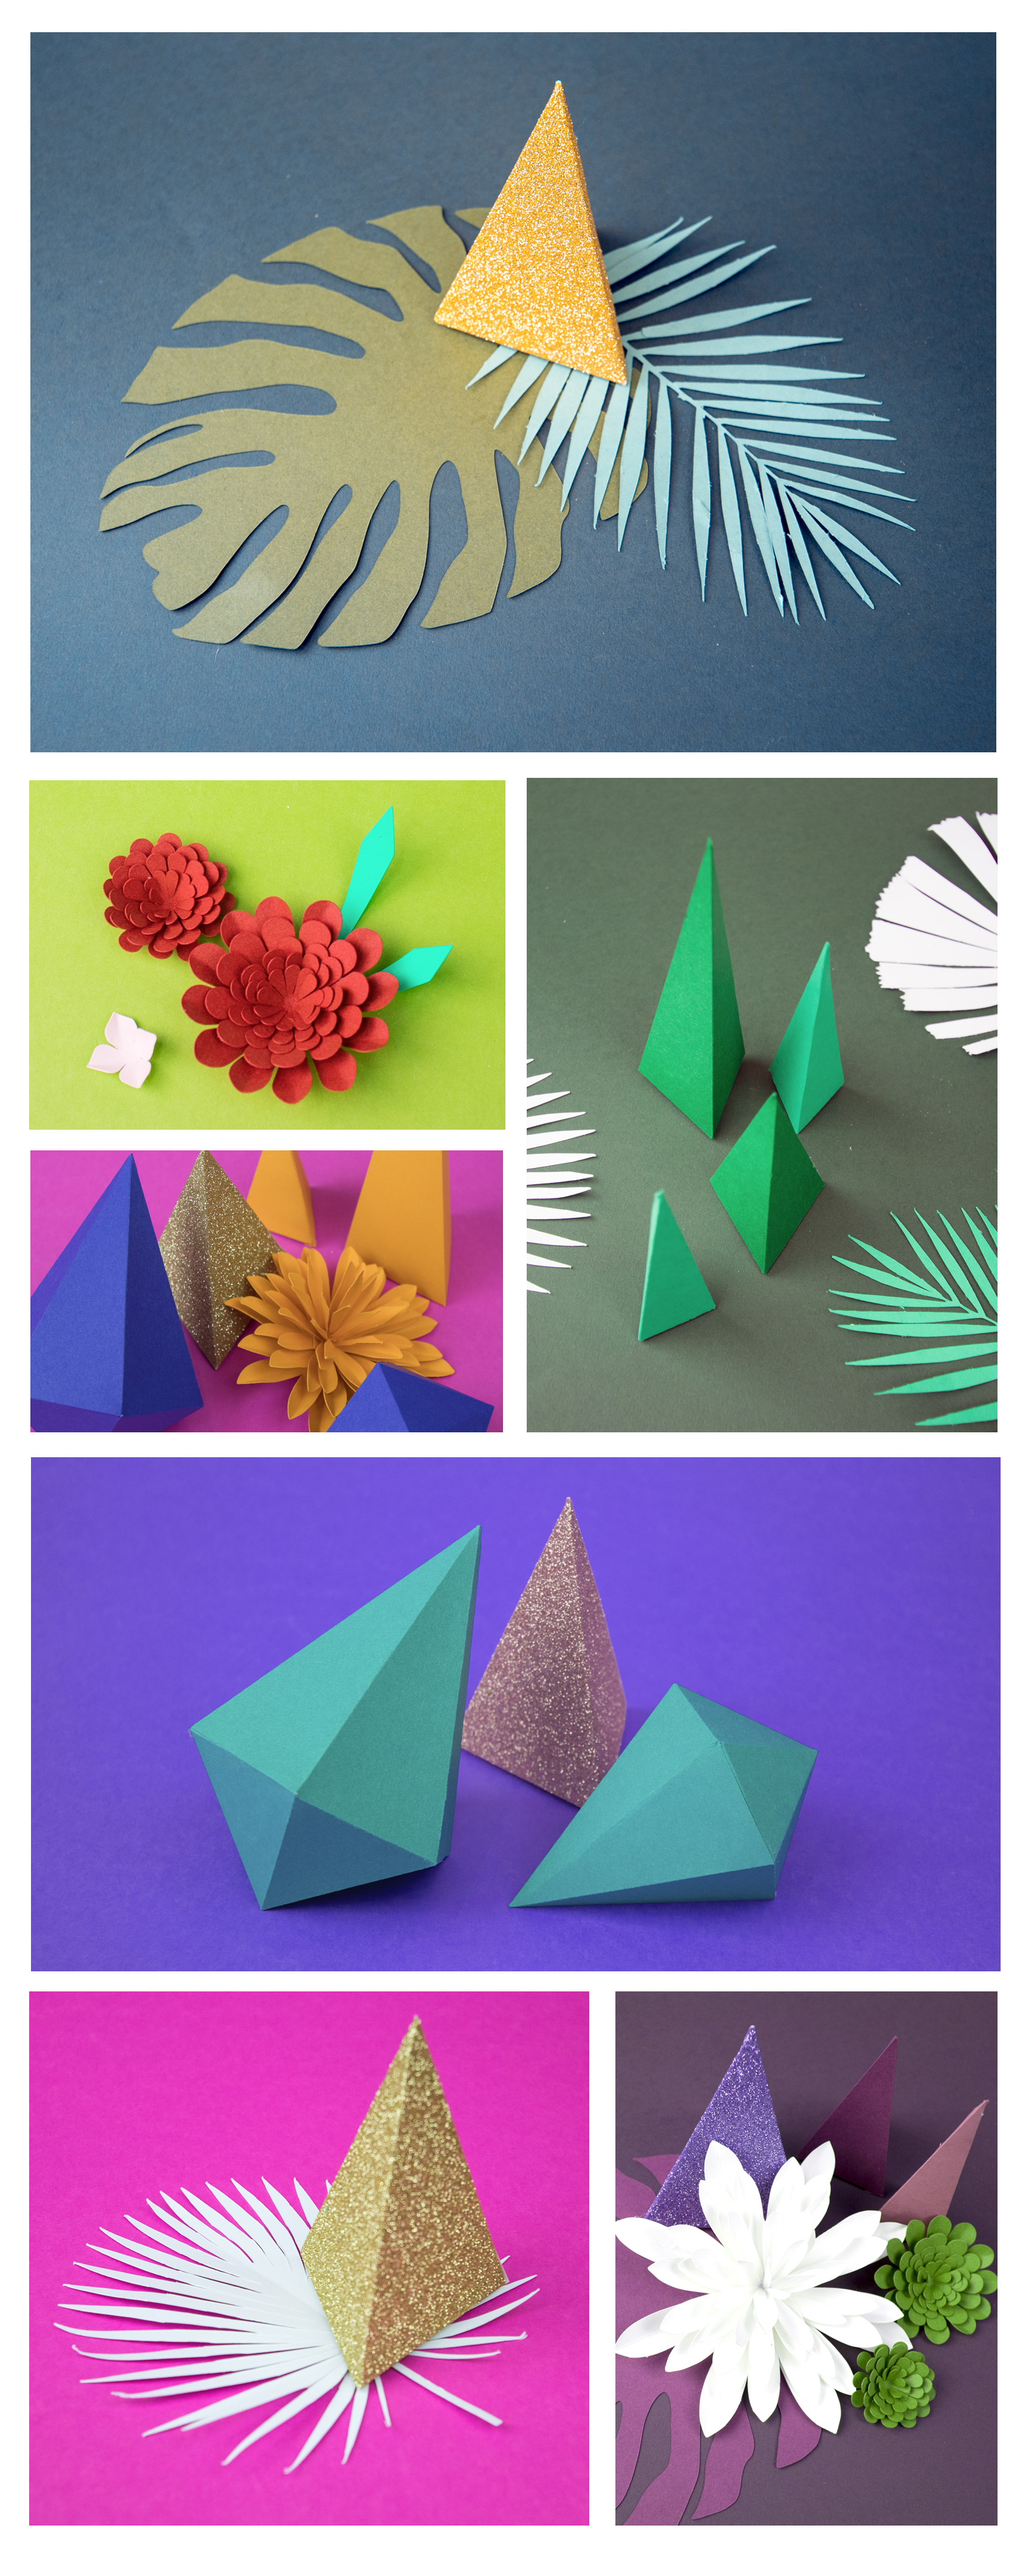 Paper-sculpture-botanical-gems